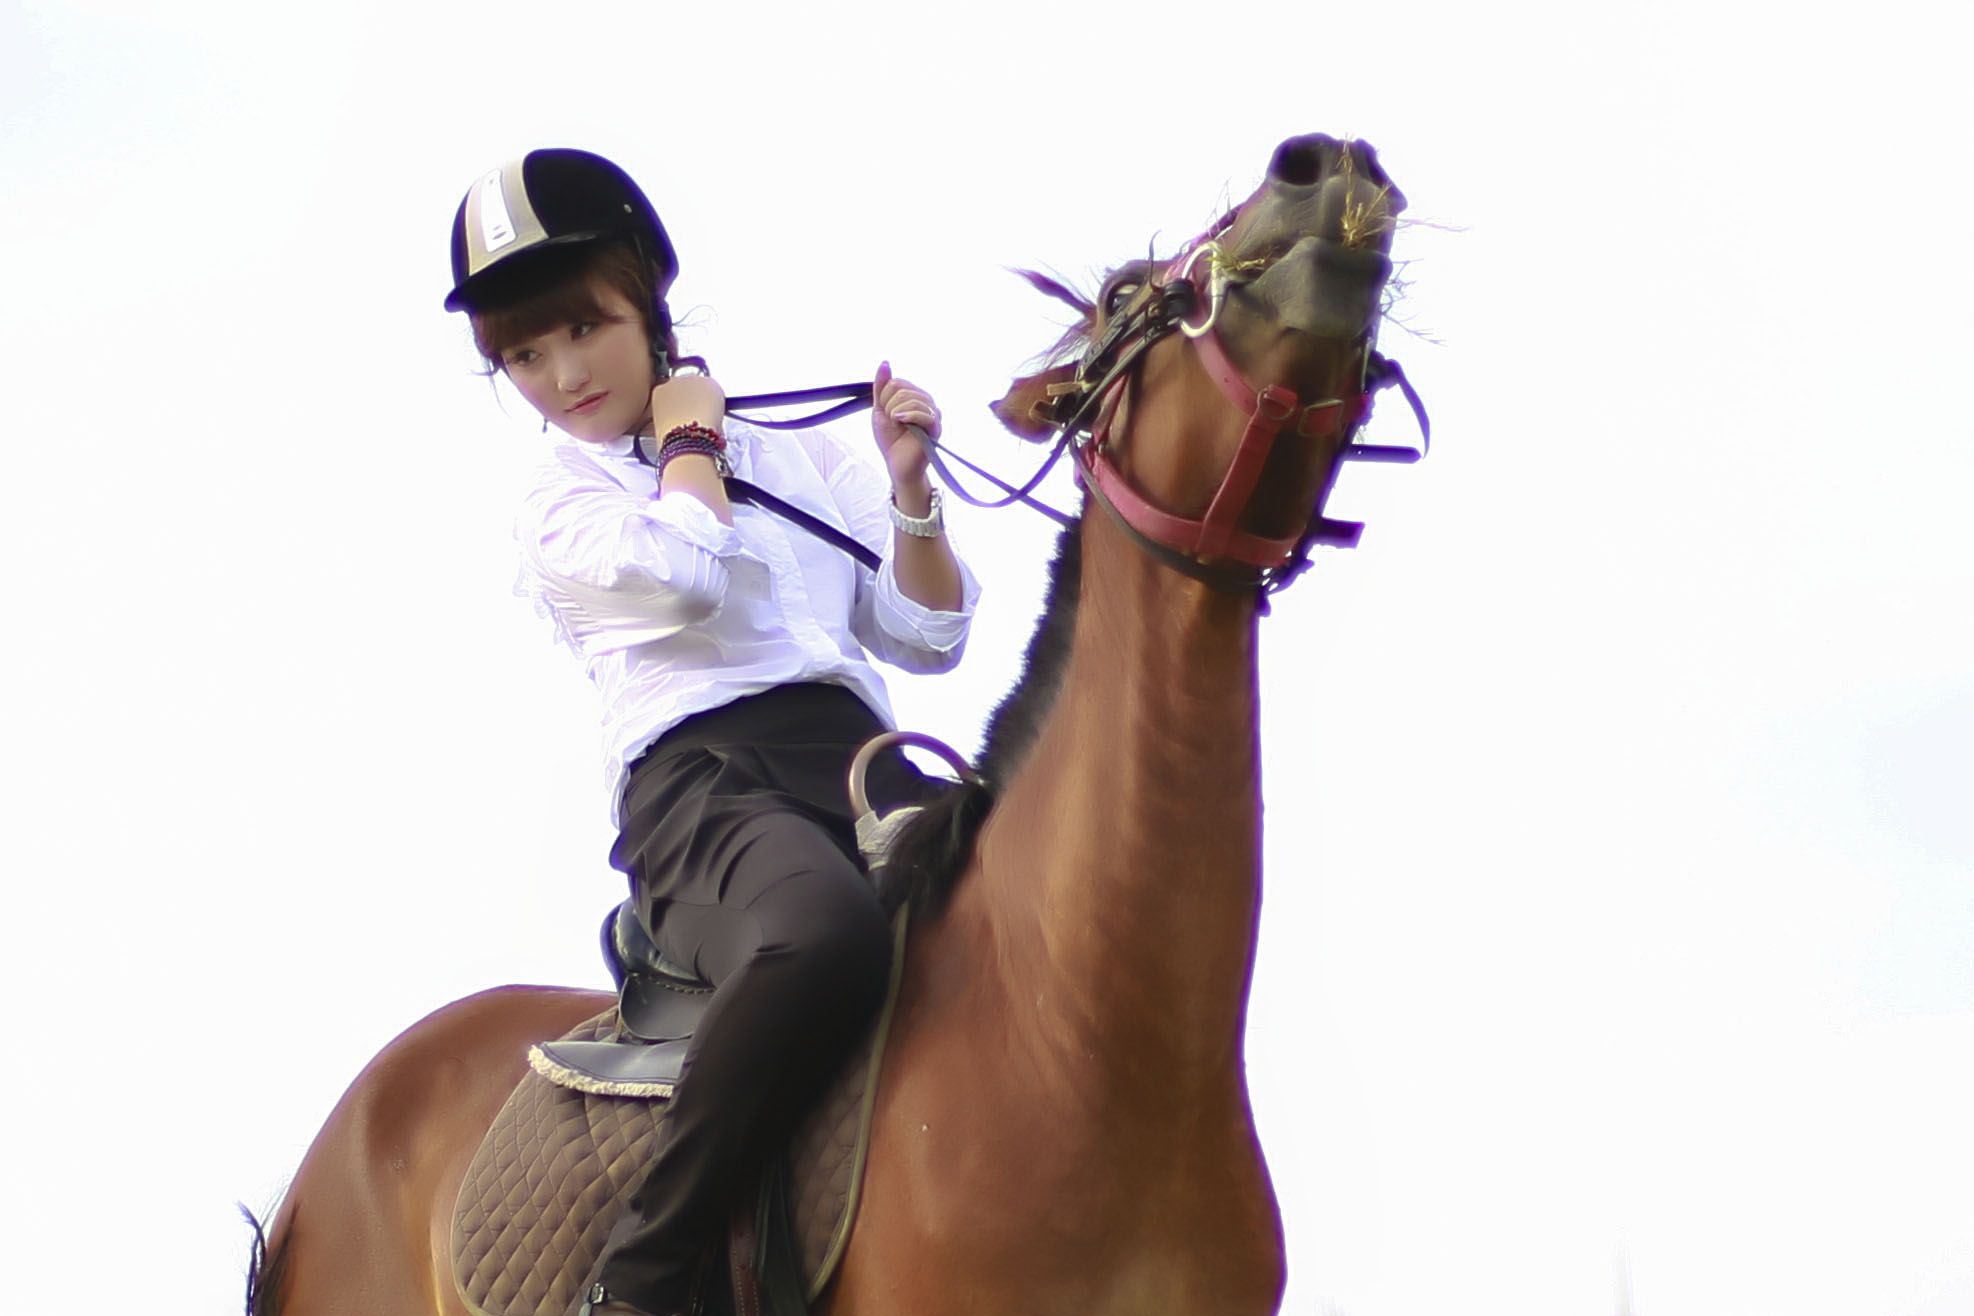 骑马，美女骑马，女人骑马视频素材,文体竞技视频素材下载,高清3840X2160视频素材下载,凌点视频素材网,编号:410386